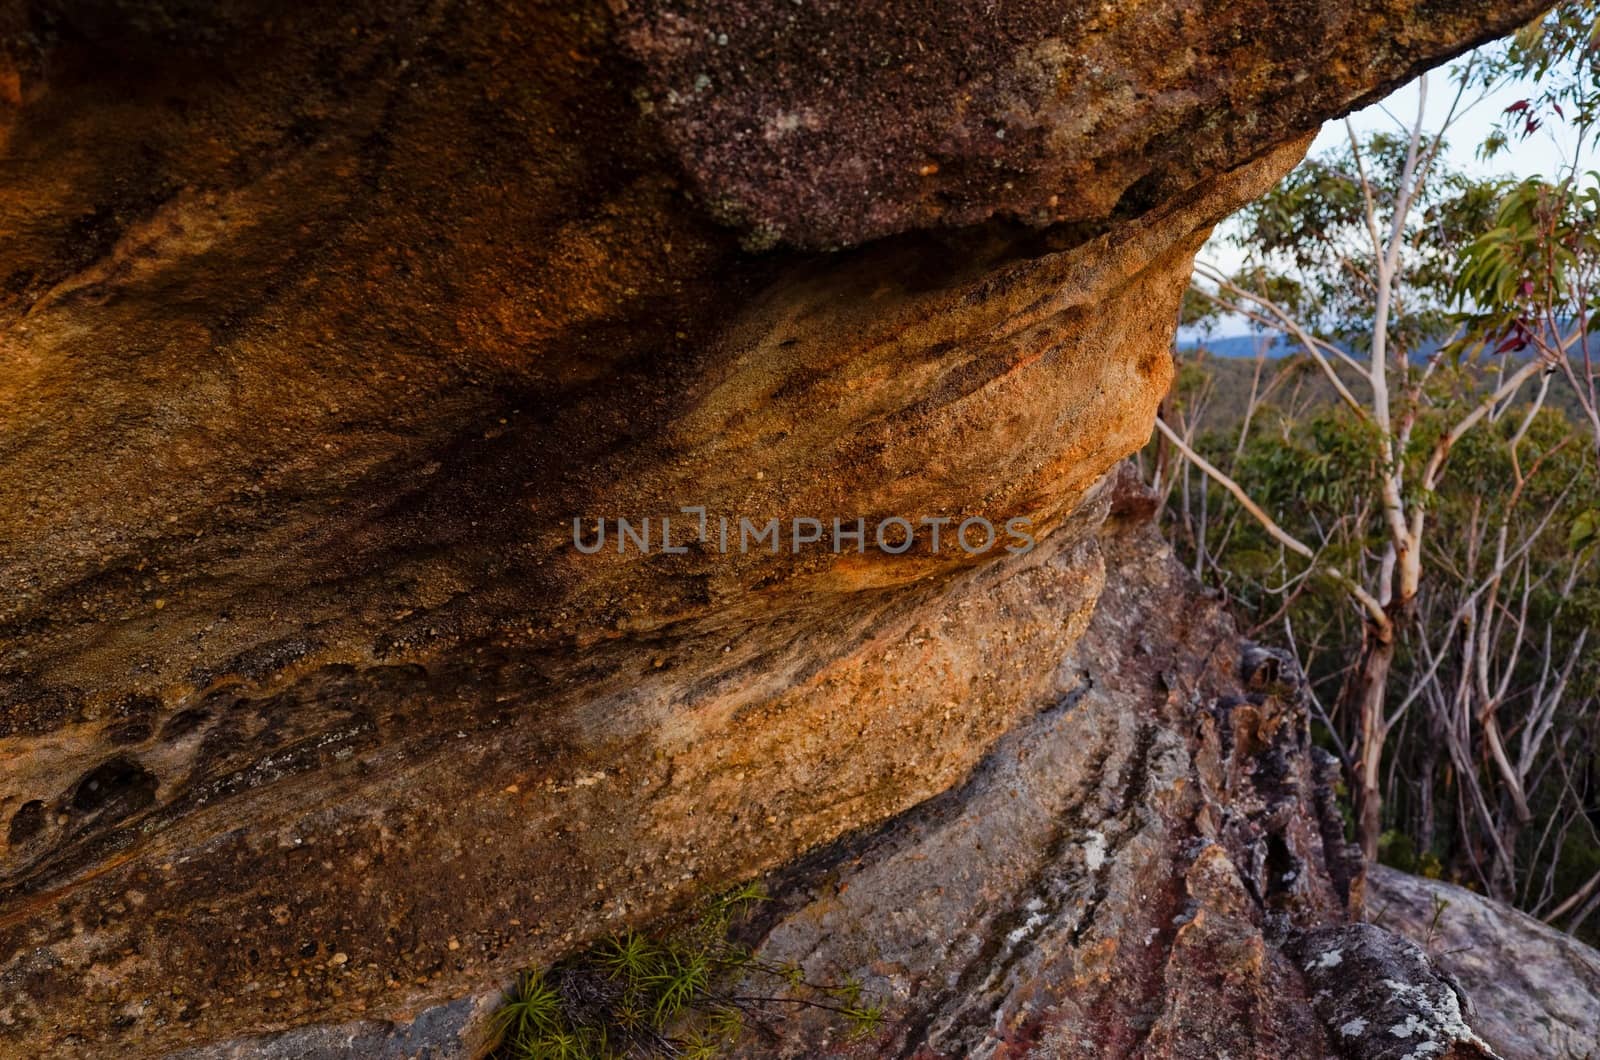 Rock formations in the Australian bush.